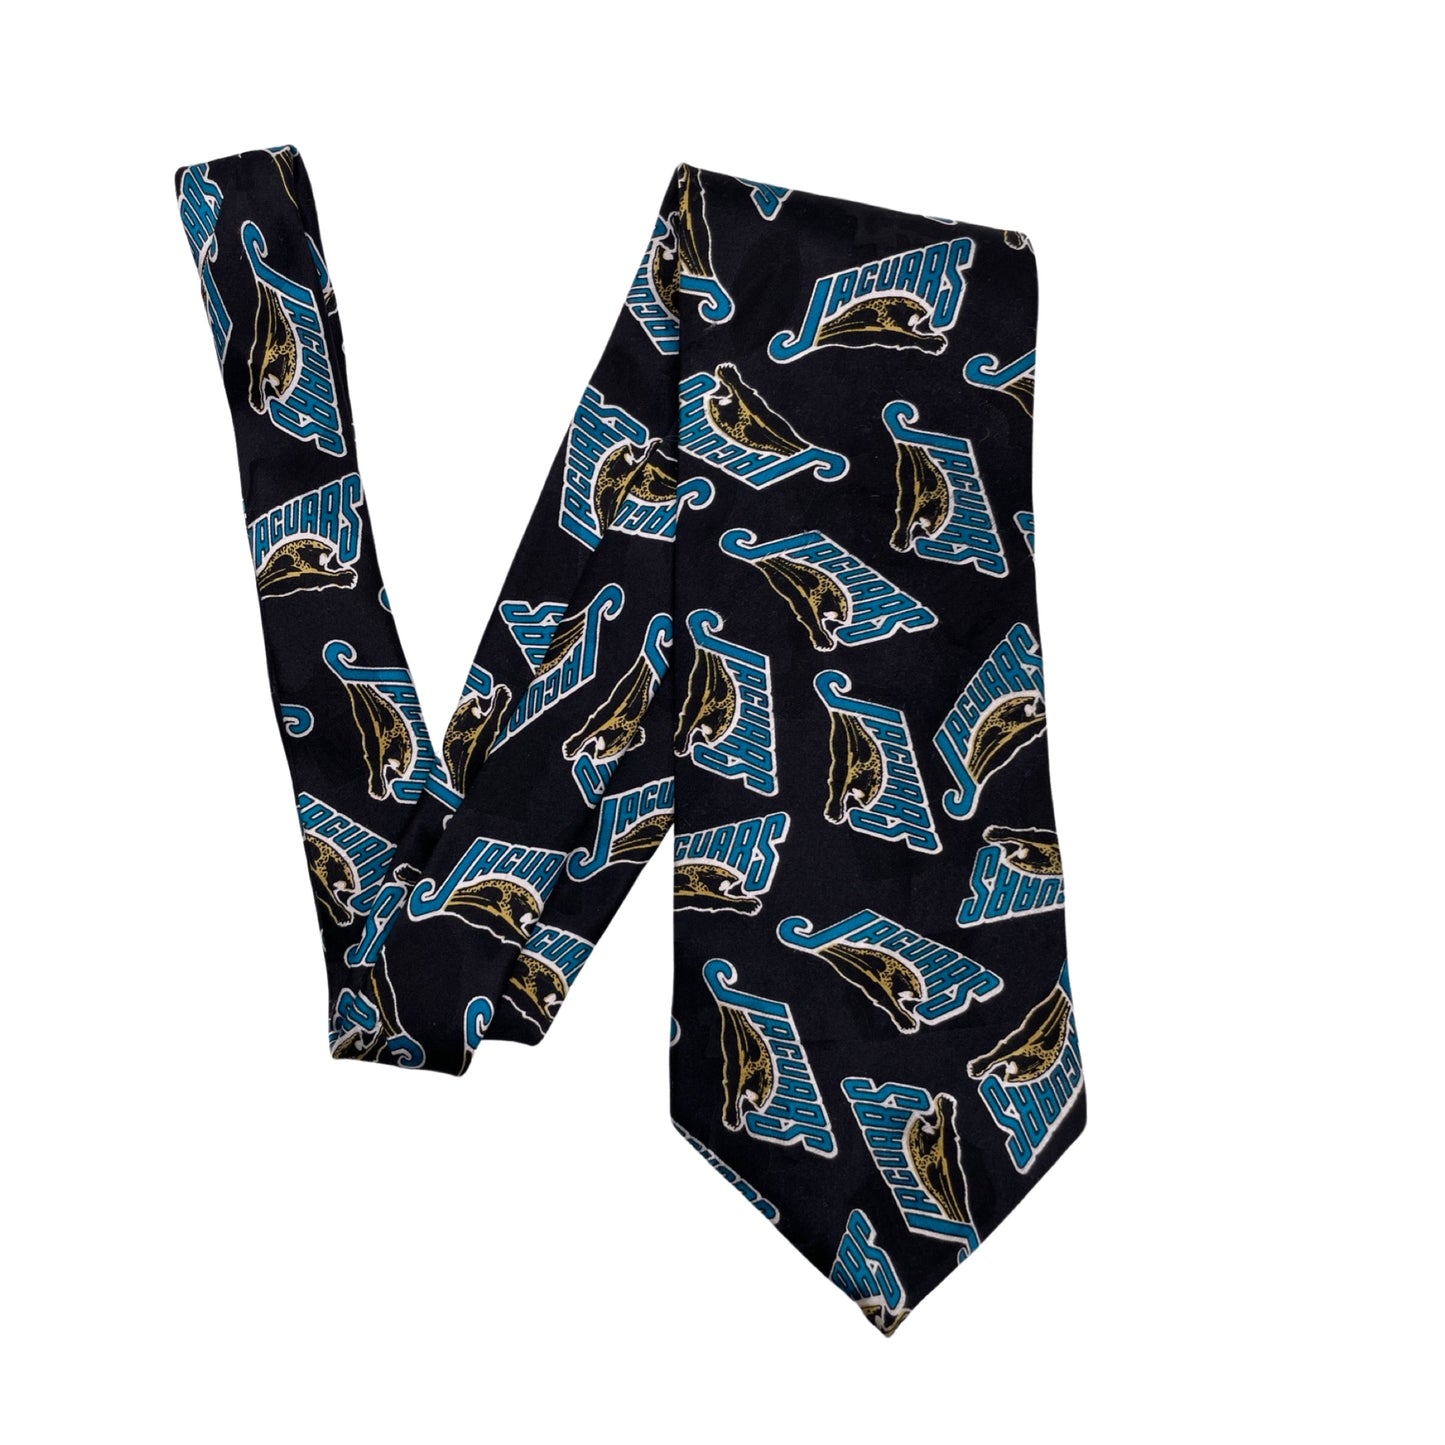 Vintage Jacksonville Jaguars banned logo neck tie